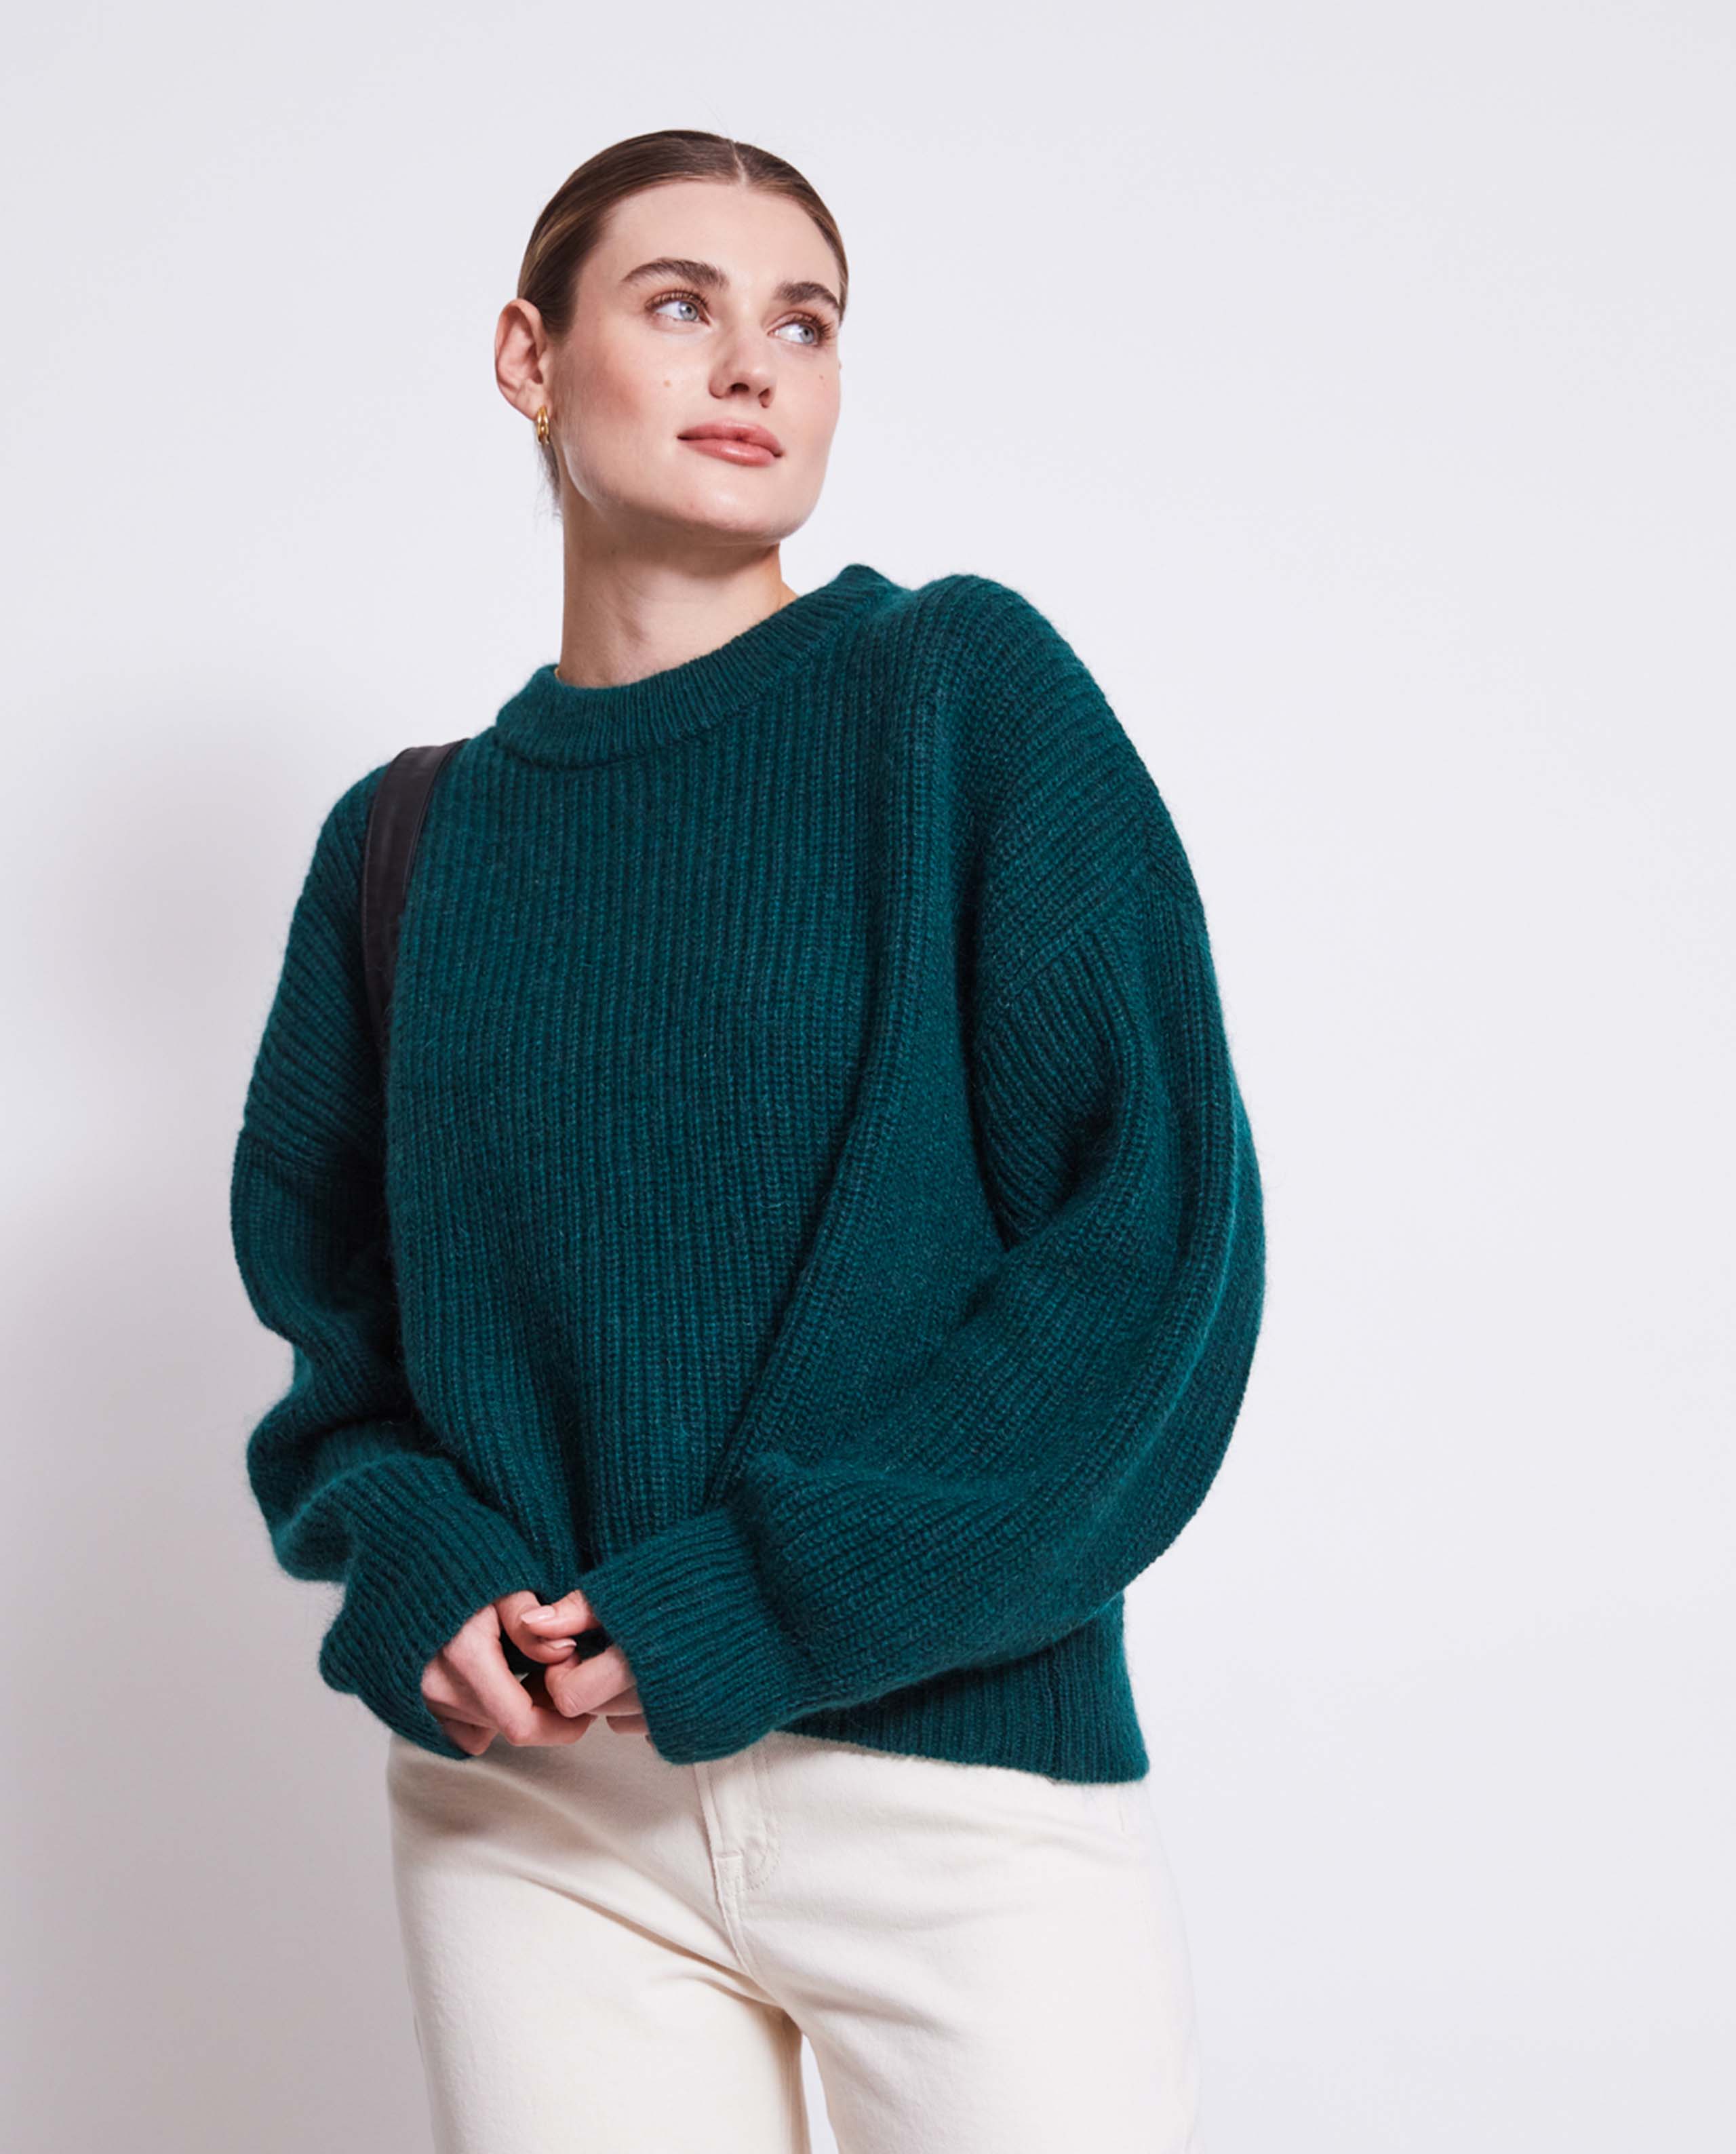 Pull en laine mohair Femme - Vert clair